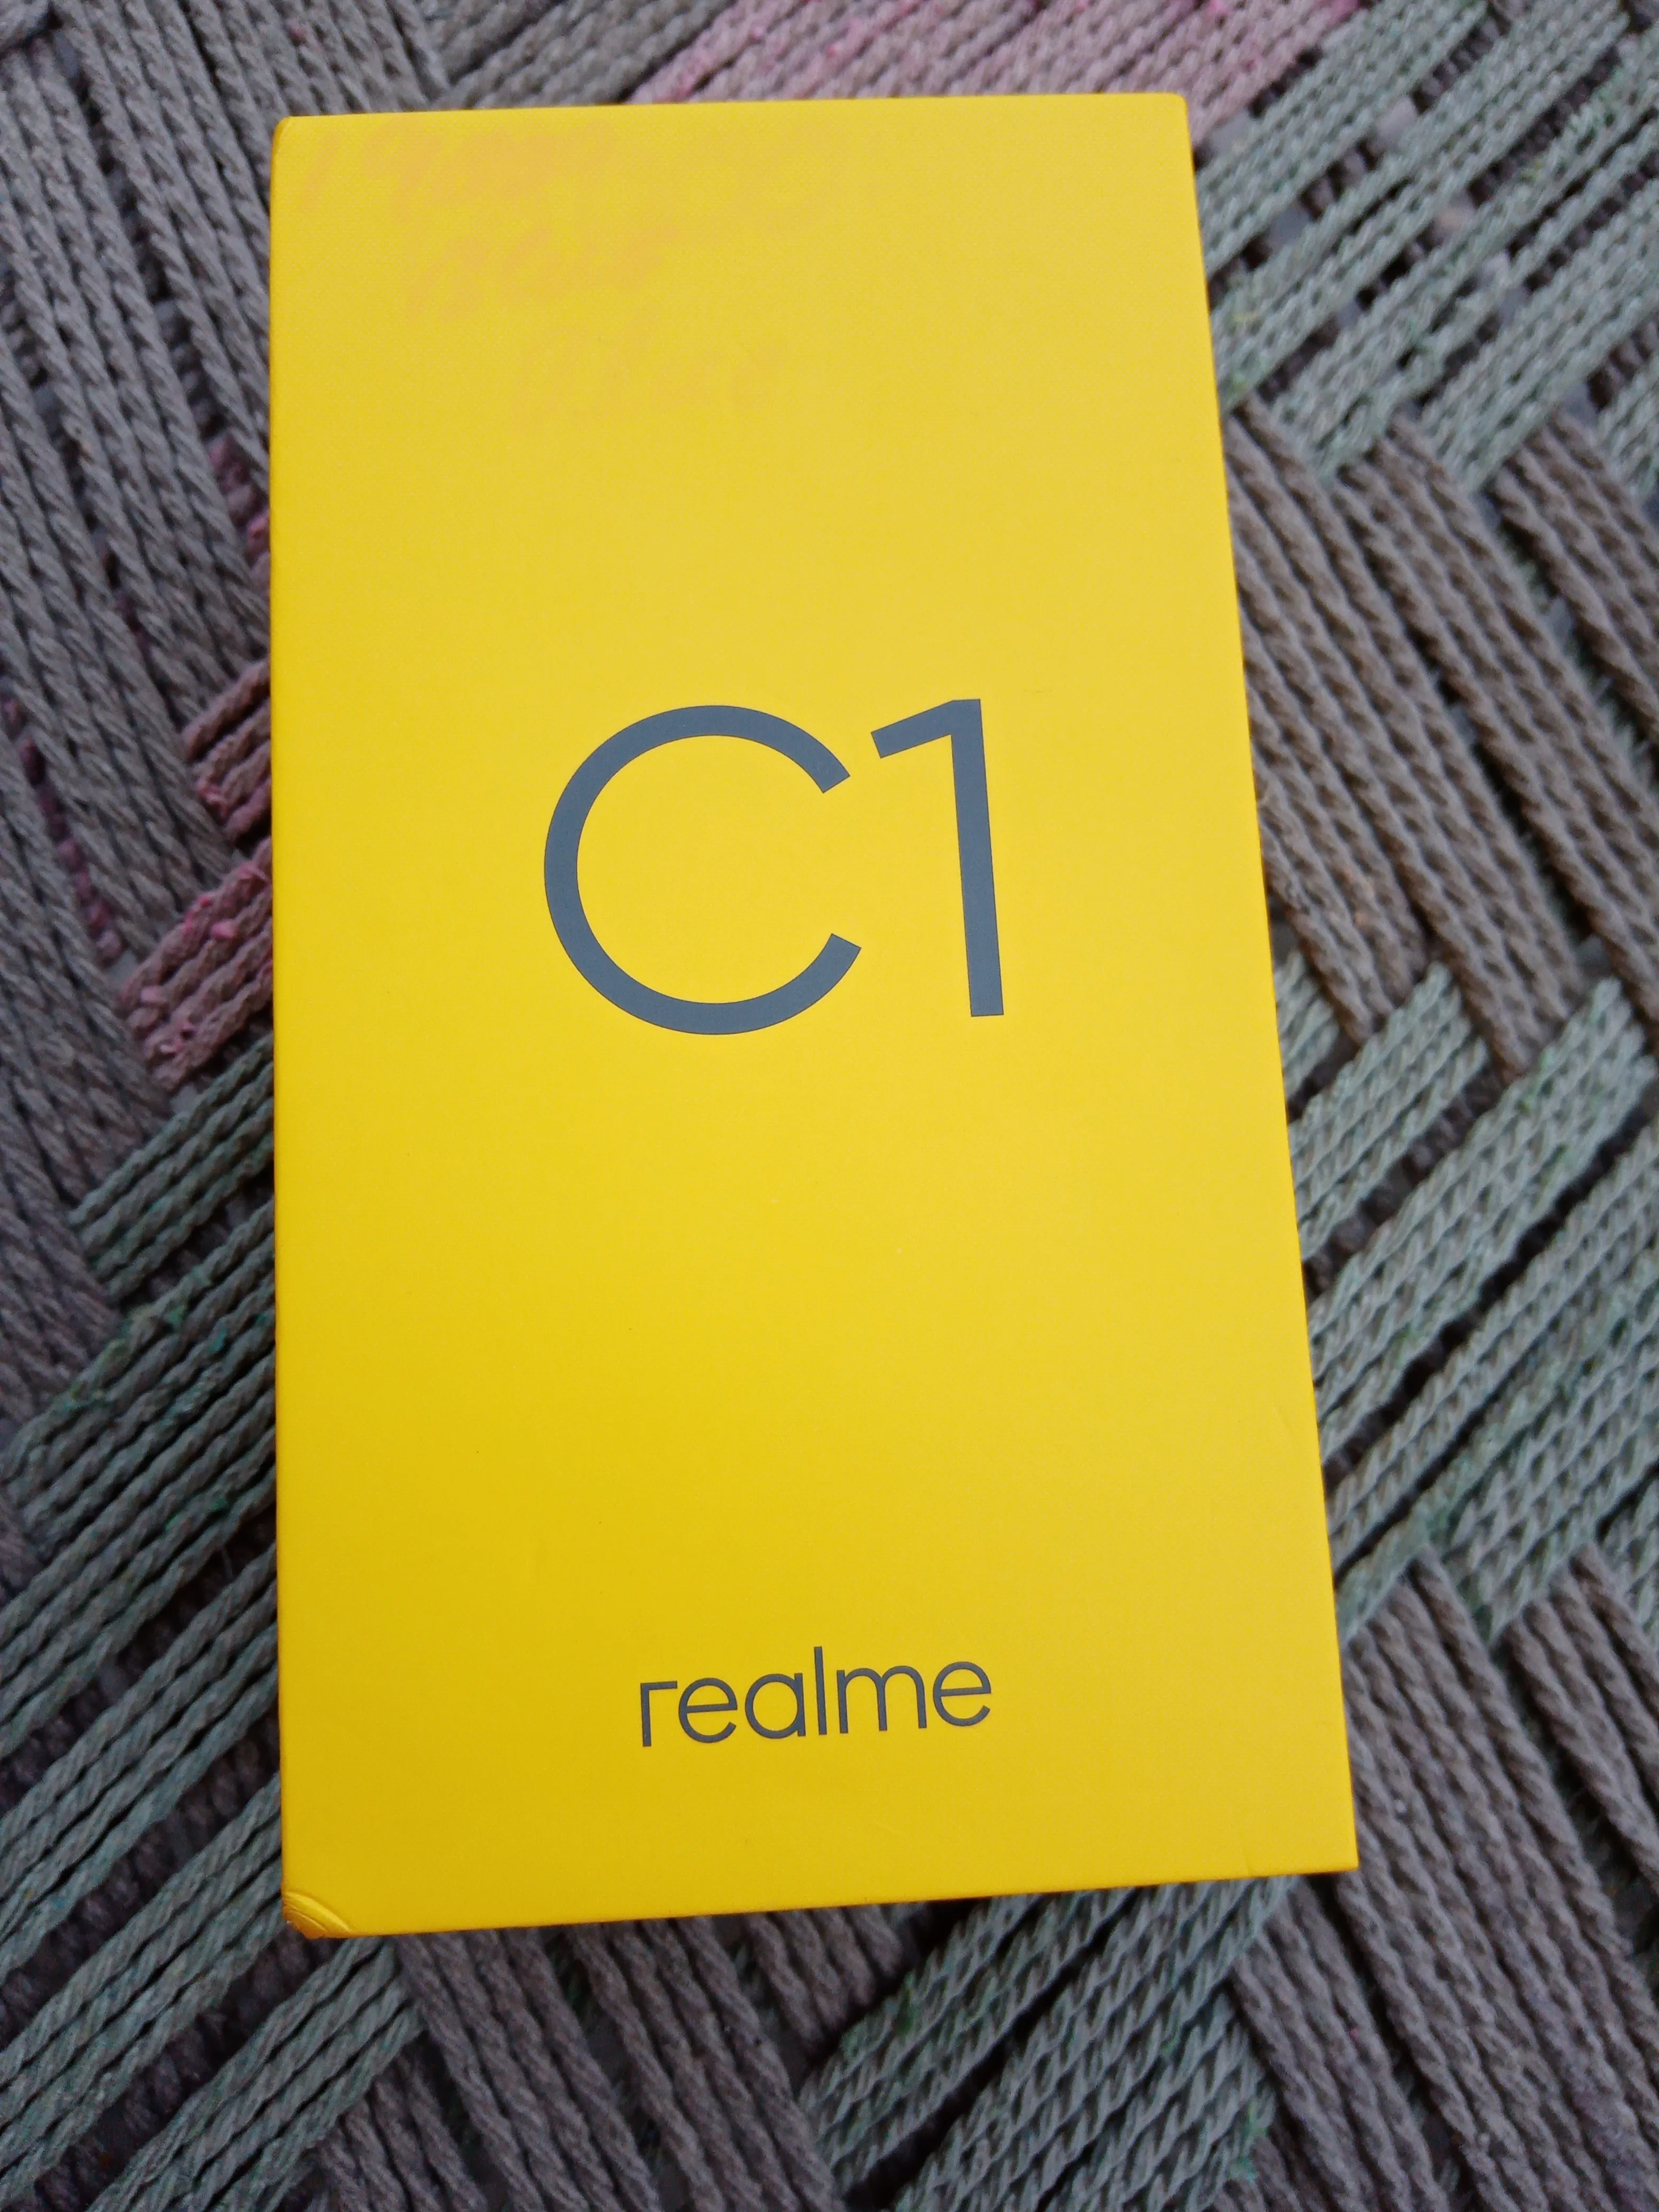 Realme C1 - photo 1